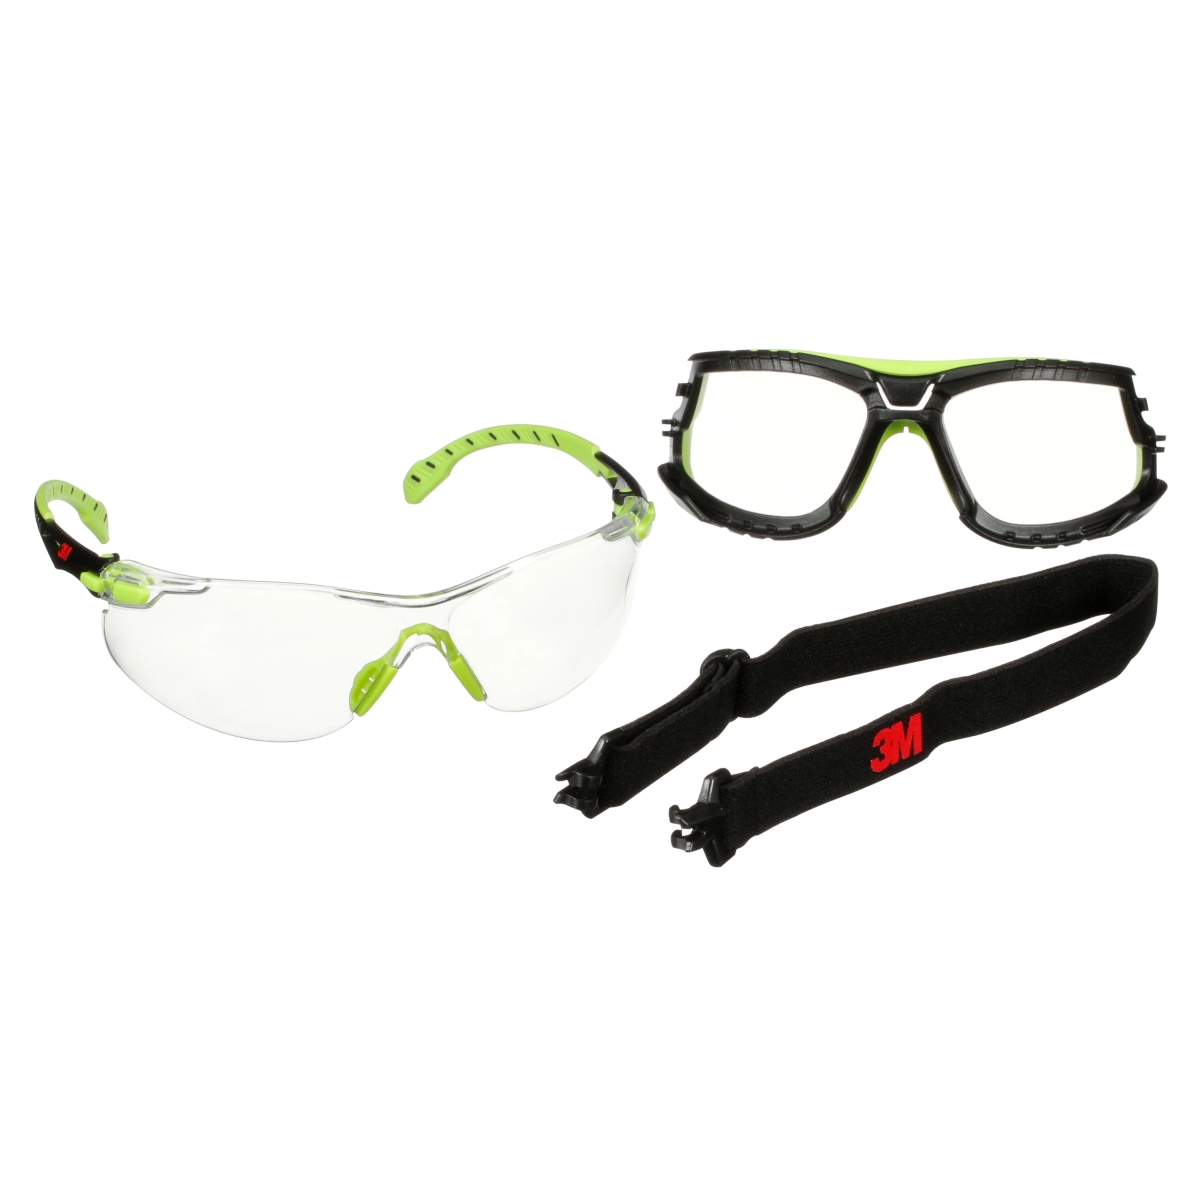 3M Solus 1000 Schutzbrille, grün/schwarze Bügel, Scotchgard Anti-Fog-/Antikratz-Beschichtung (K&N), transparente Scheibe, TPE-Dichtung und Kopfband, S1201SGAF-TSKT-EU